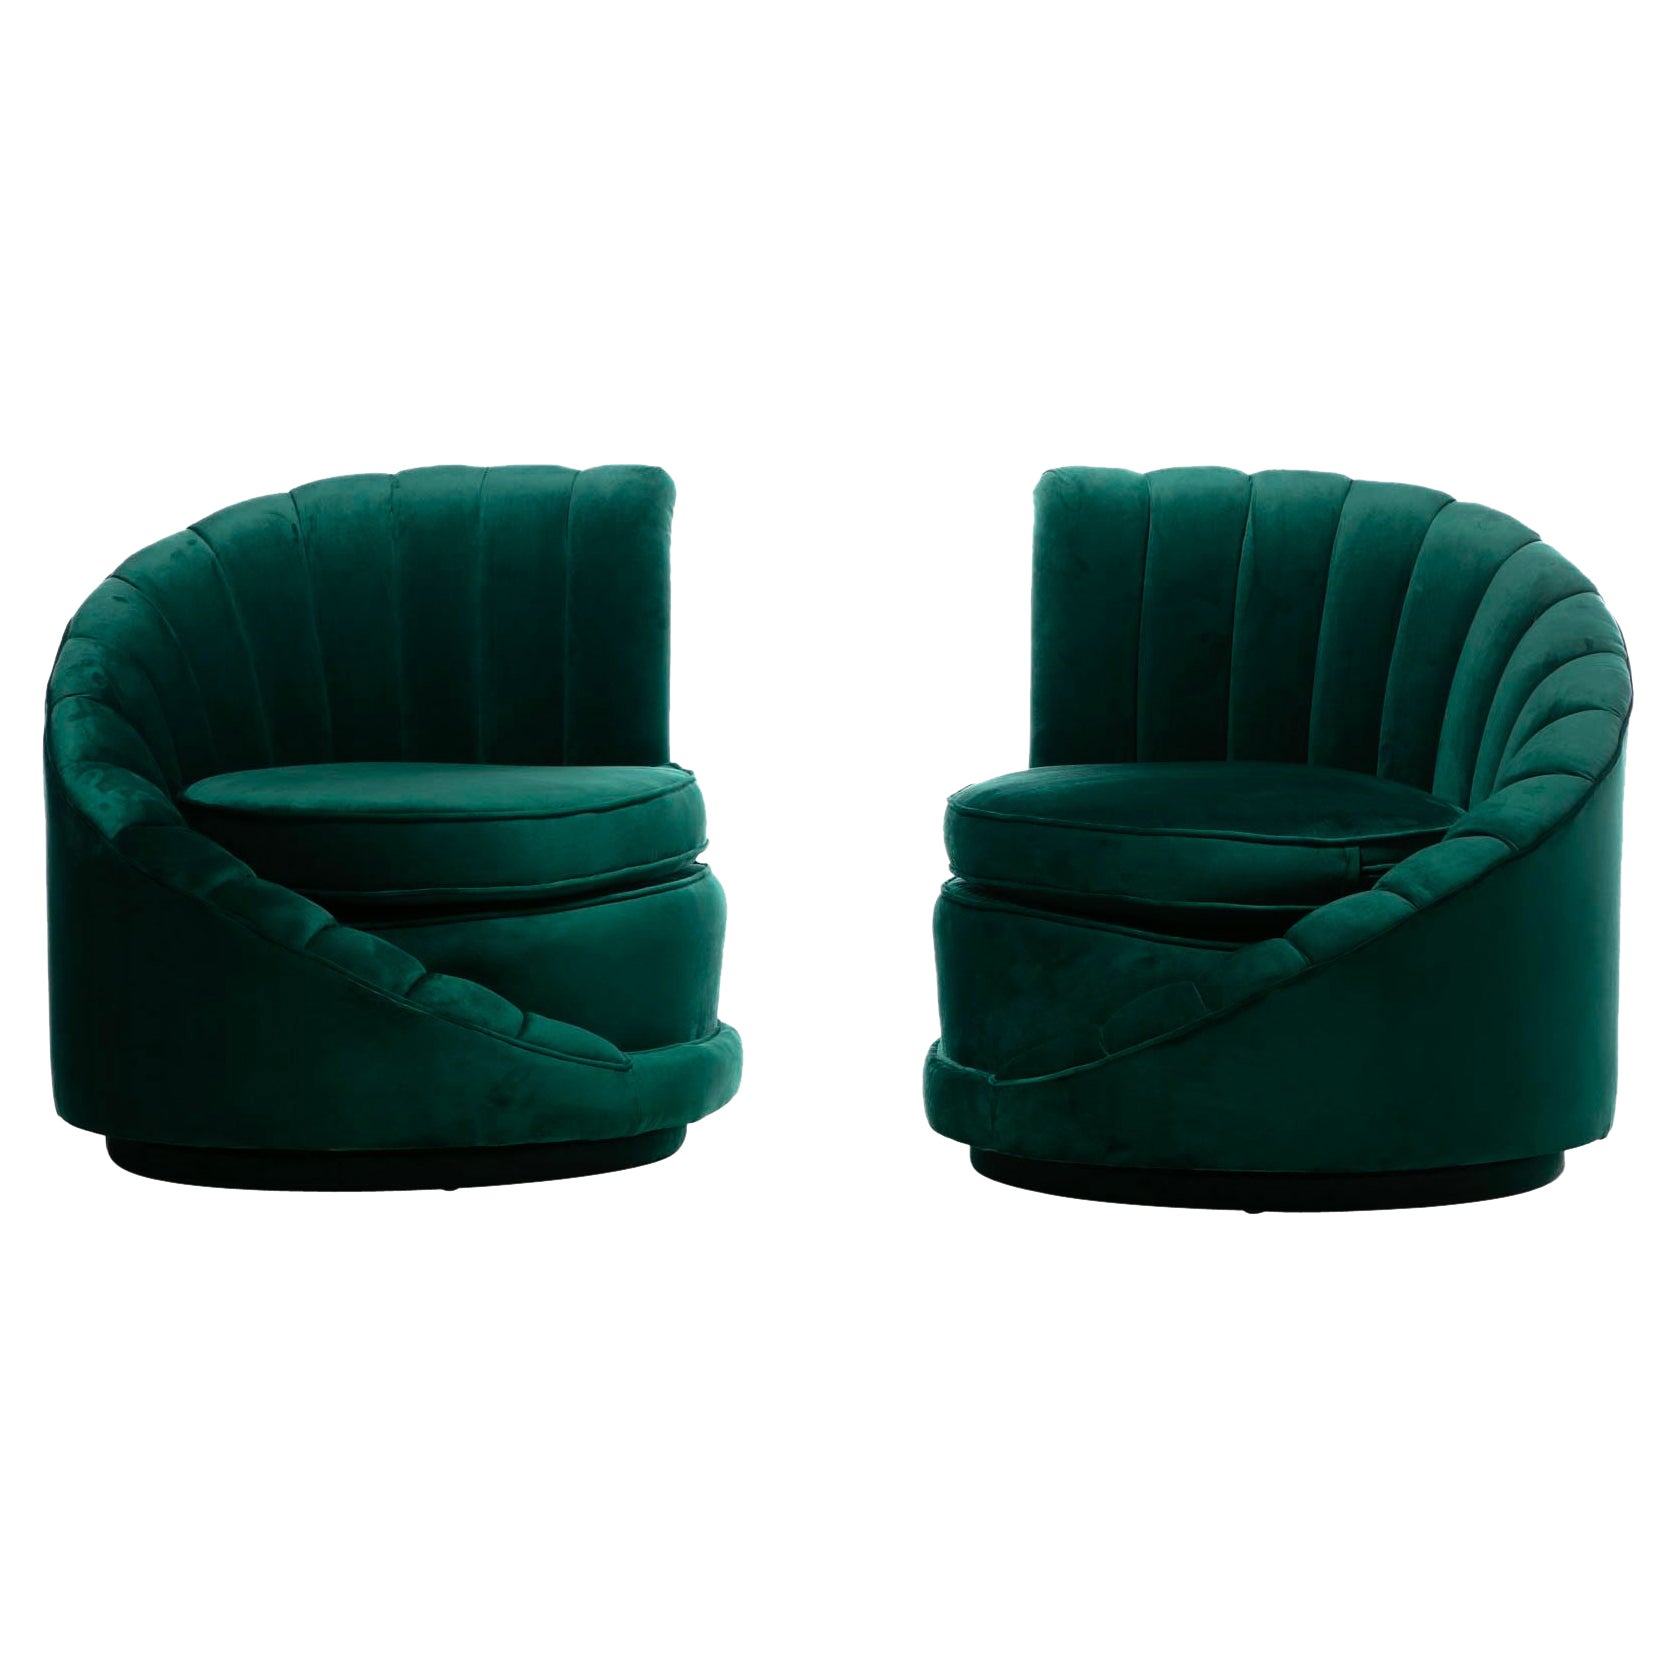 Hollywood Regency Glamorous Asymmetrical Swivel Chairs in Emerald Green Velvet For Sale